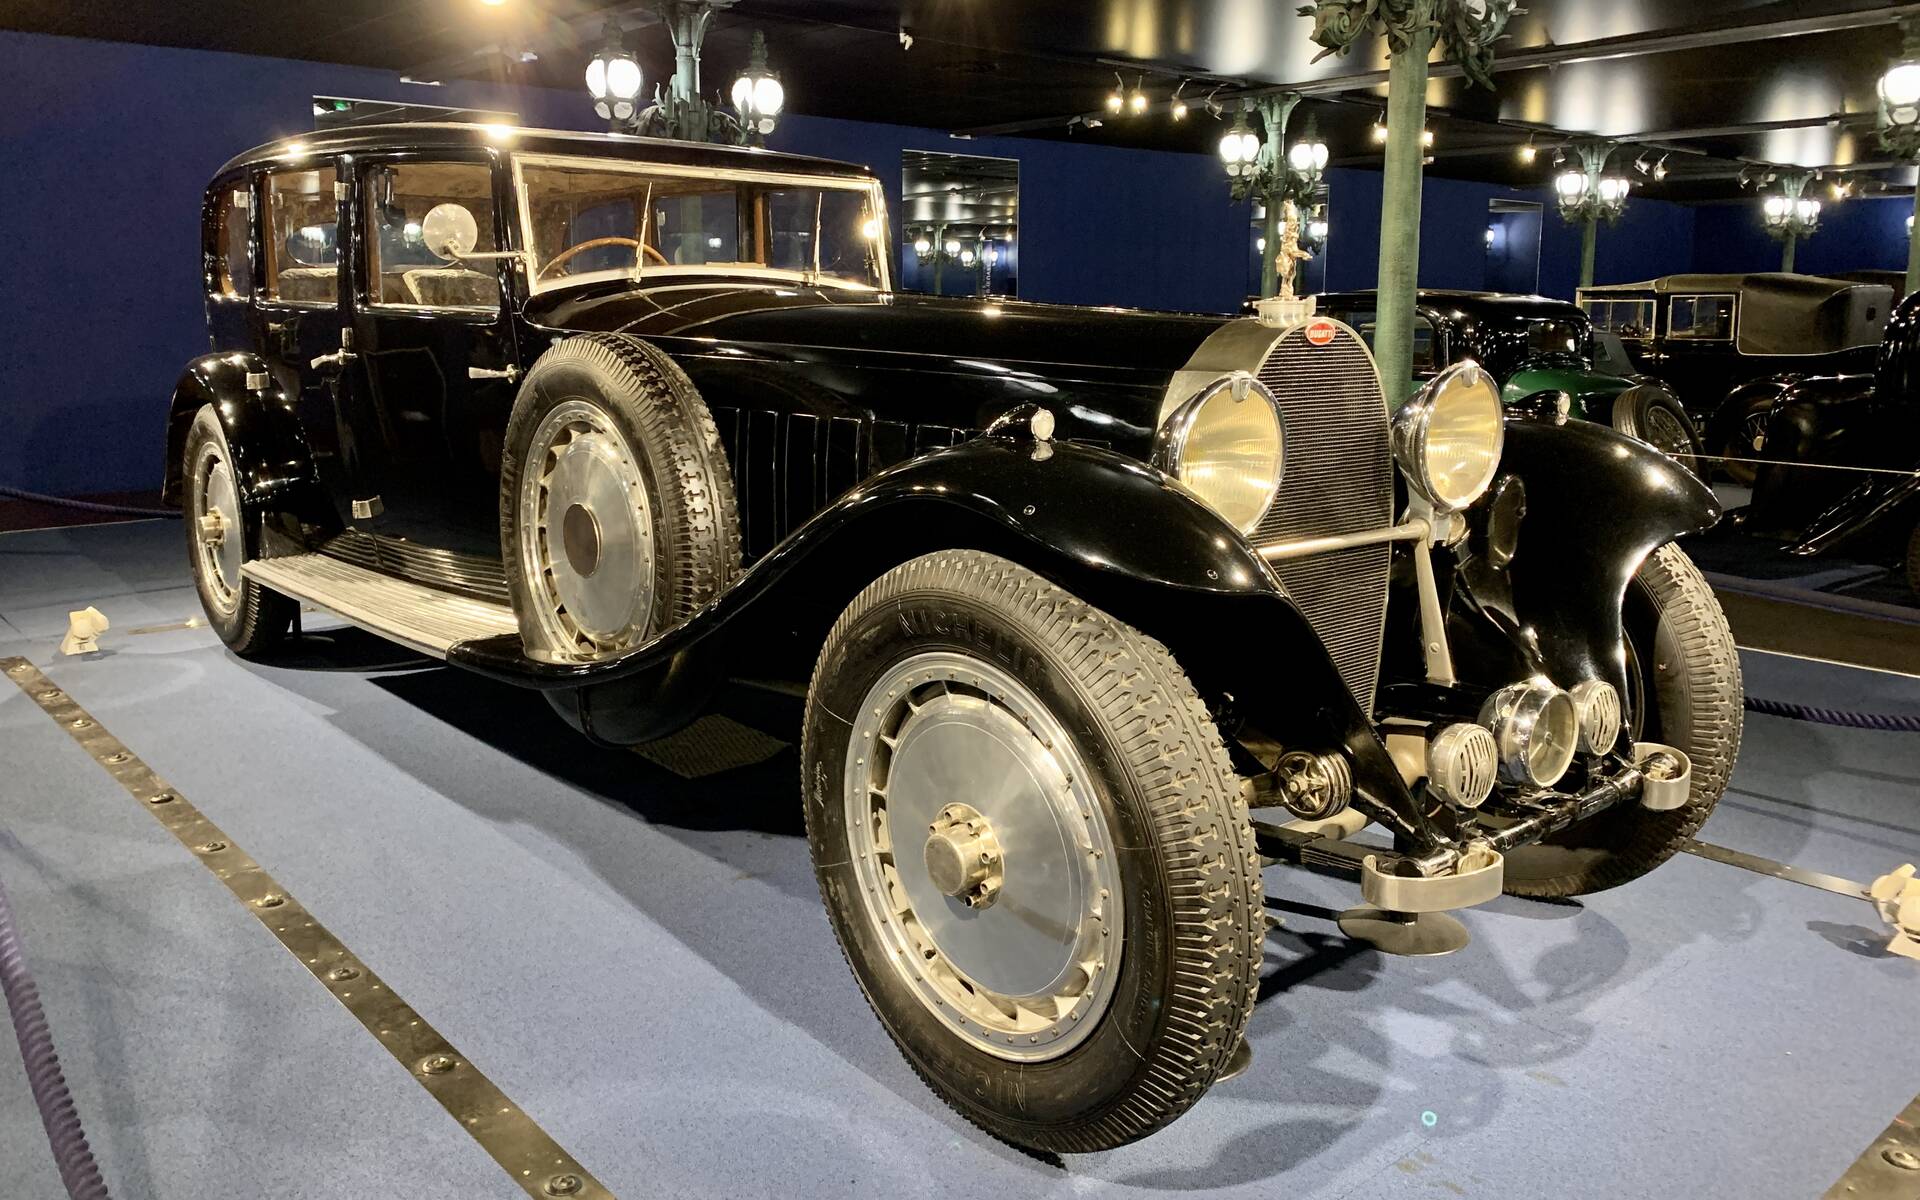 En photos : une centaine de Bugatti réunies dans un même musée 503102-en-photos-des-dizaines-de-bugatti-reunies-dans-un-meme-musee